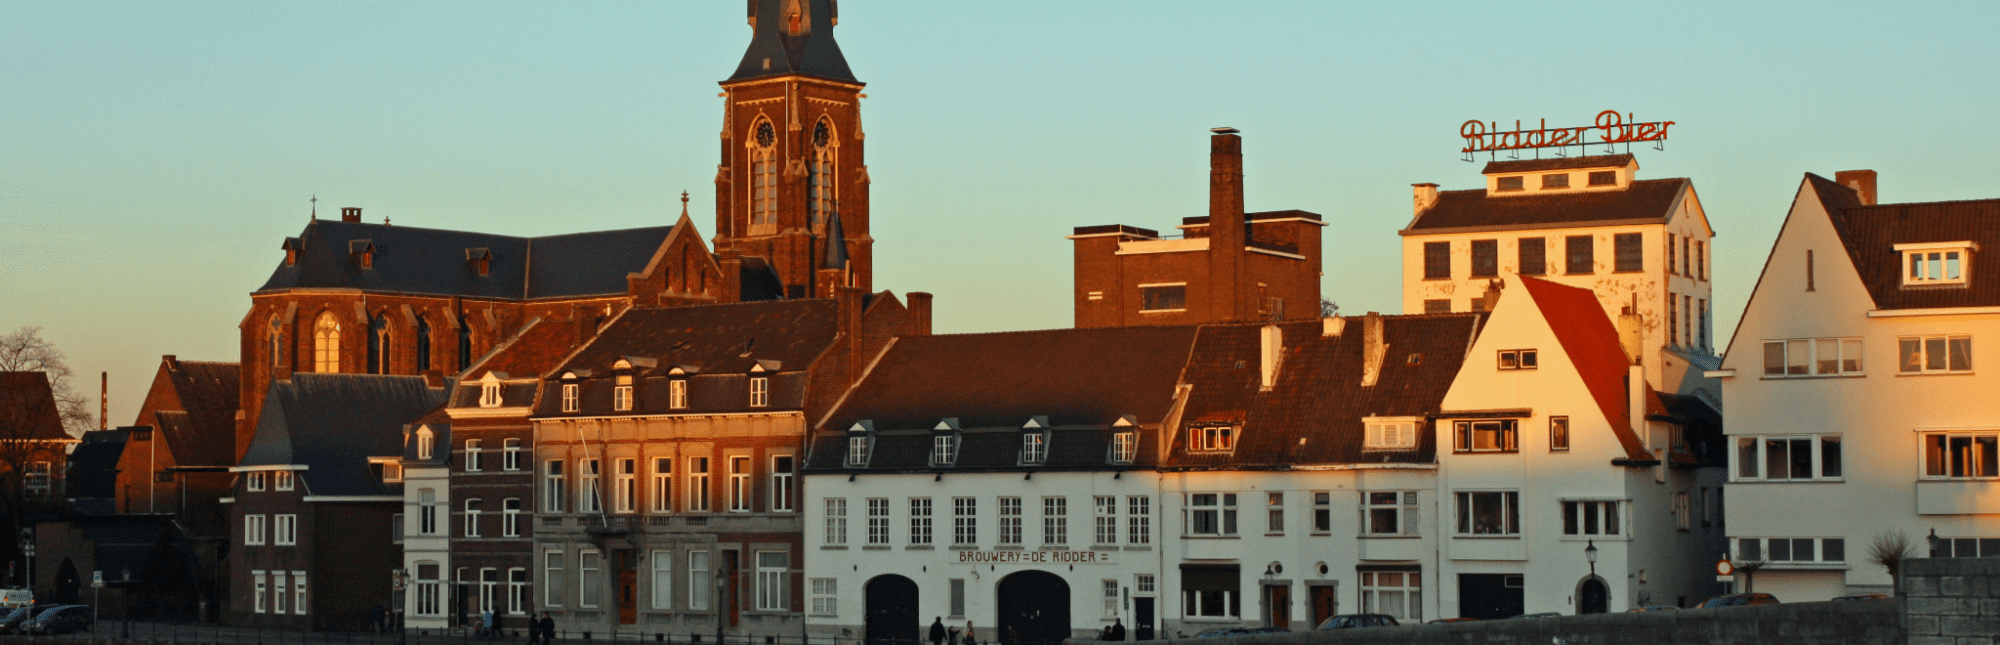 Vestiging ilionx Maastricht